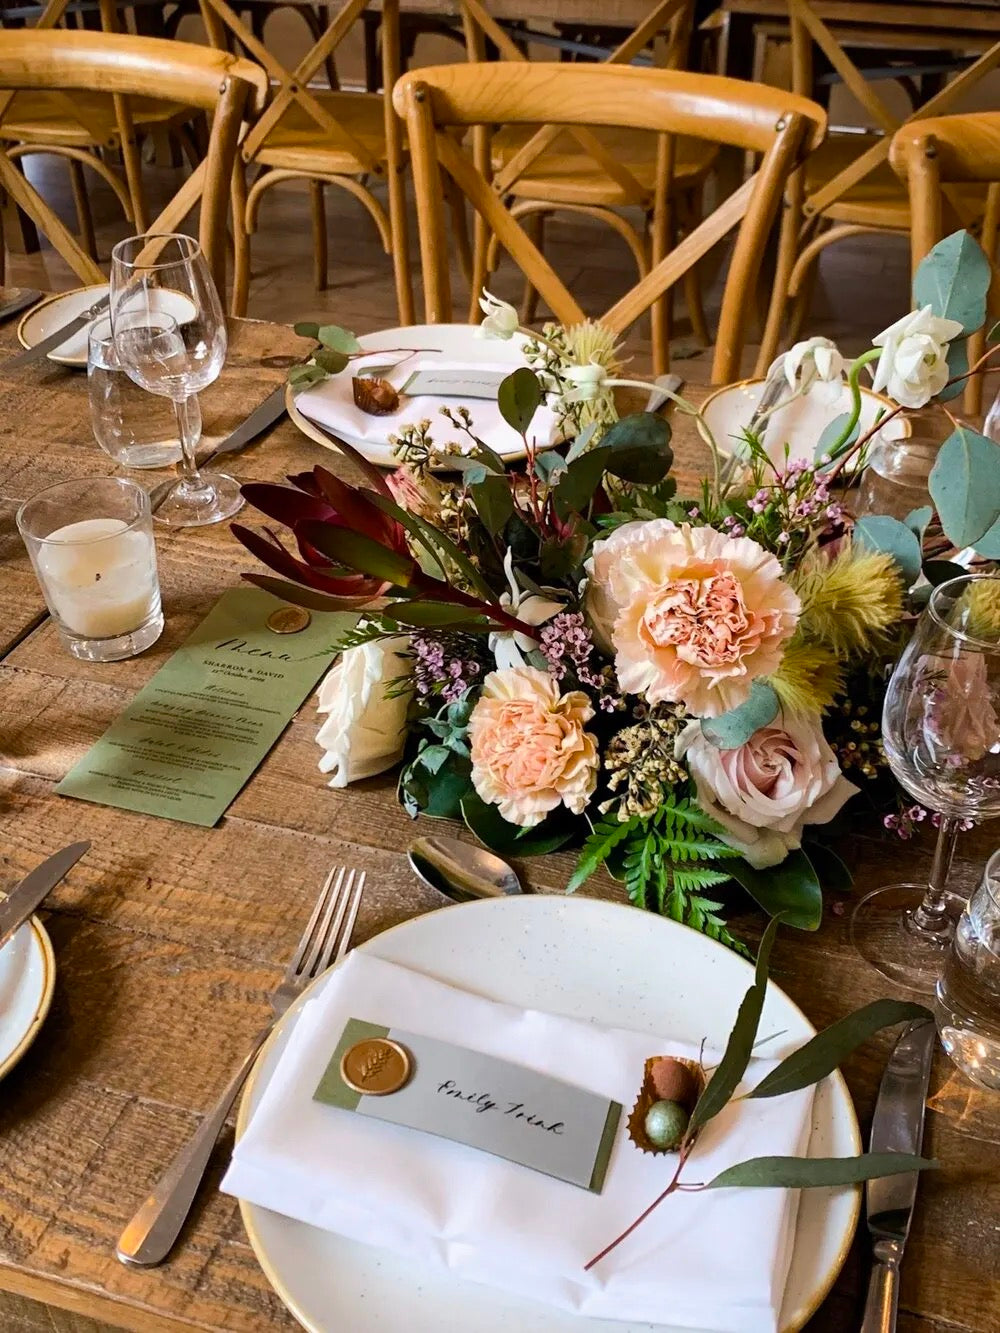 flower arrangement on table at centennial homestead